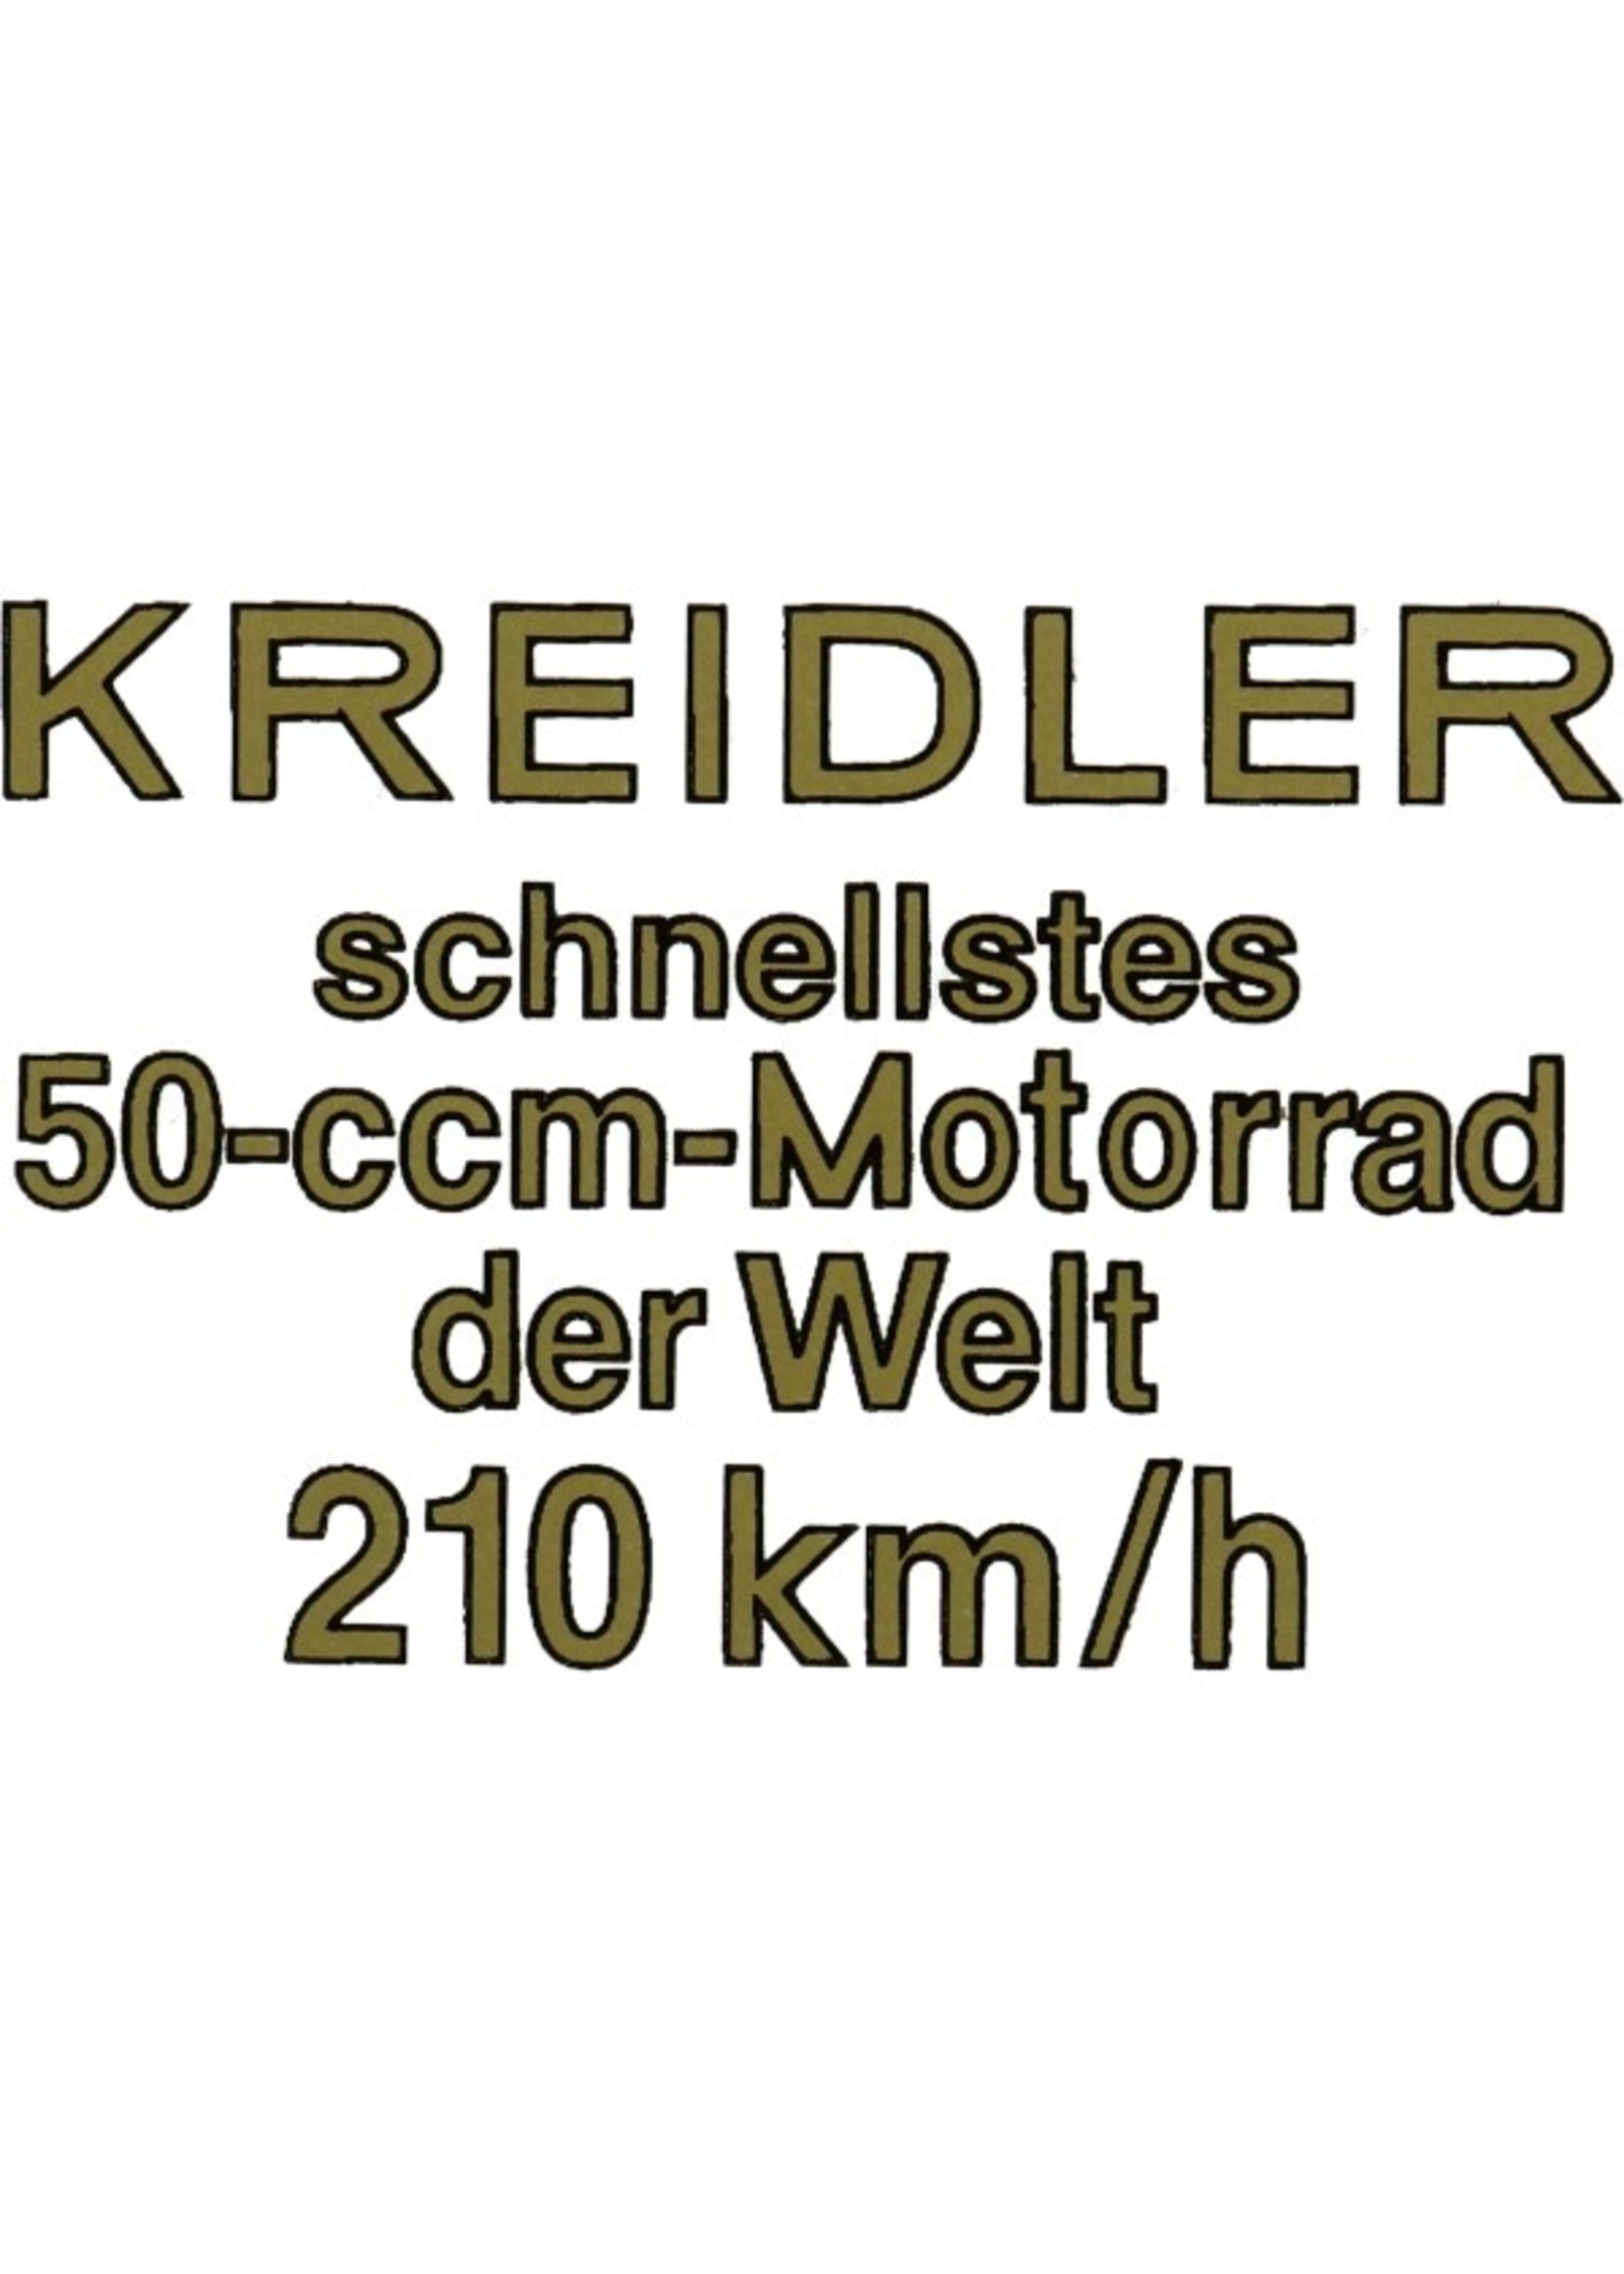 Kreidler sticker snellstes 50-ccm-motorrad der welt 210 km/h kreidler goud